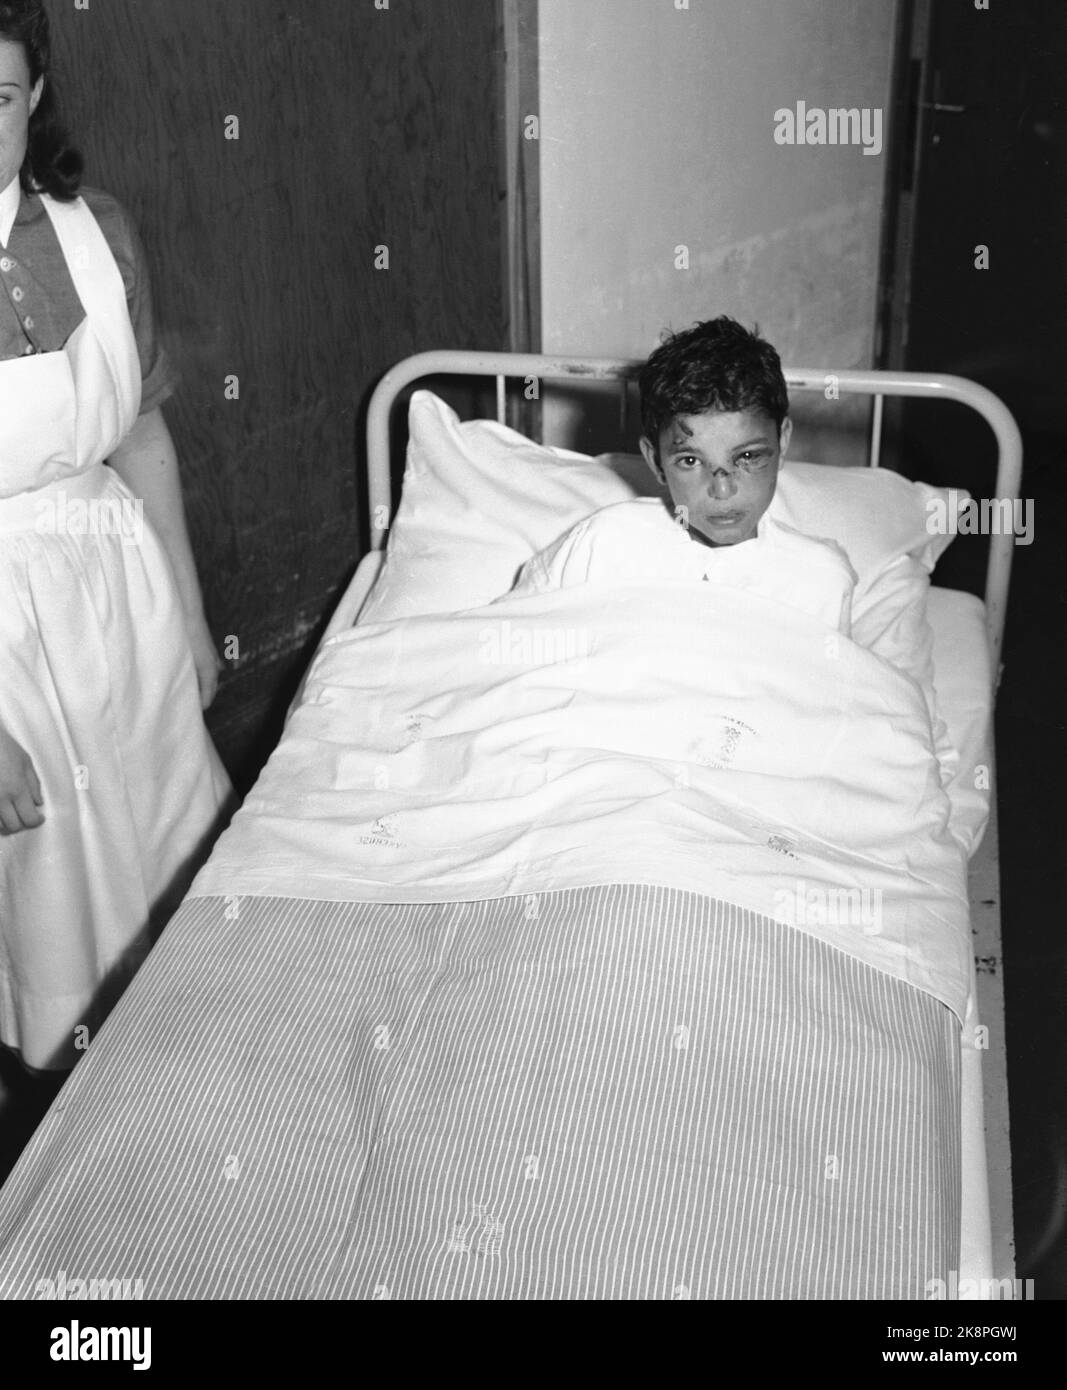 Il dramma. Isaac Allal, l'unico sopravvissuto dopo l'incidente aereo di Hurum il 20 novembre 1949, in cui morirono 28 bambini ebrei e l'intero equipaggio. Qui è undici-anno-vecchio Isaac Allal nel letto dell'ospedale a Drammen Hospital. Un piccolo taglio sul naso e l'occhio blu sono gli unici segni visibili dell'incidente che ha appena sopravvissuto. Foto; NTB / NTB Foto Stock